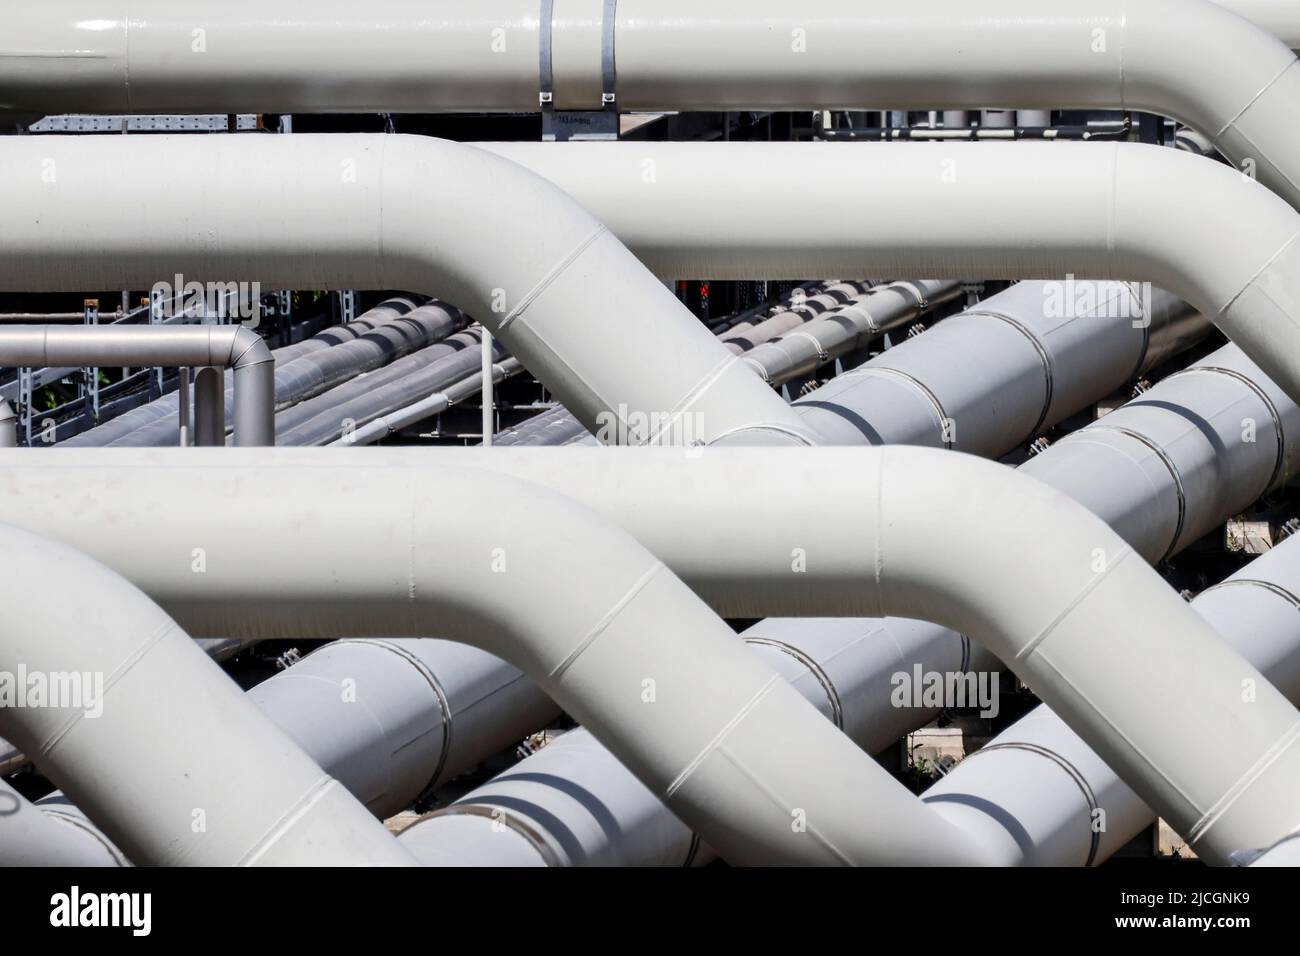 Una estación de compresores del gasoducto de Jagal se representa en una estación de compresores de gas en Mallnow, Alemania, el 13 de junio de 2022. REUTERS/Hannibal Hanschke Foto de stock